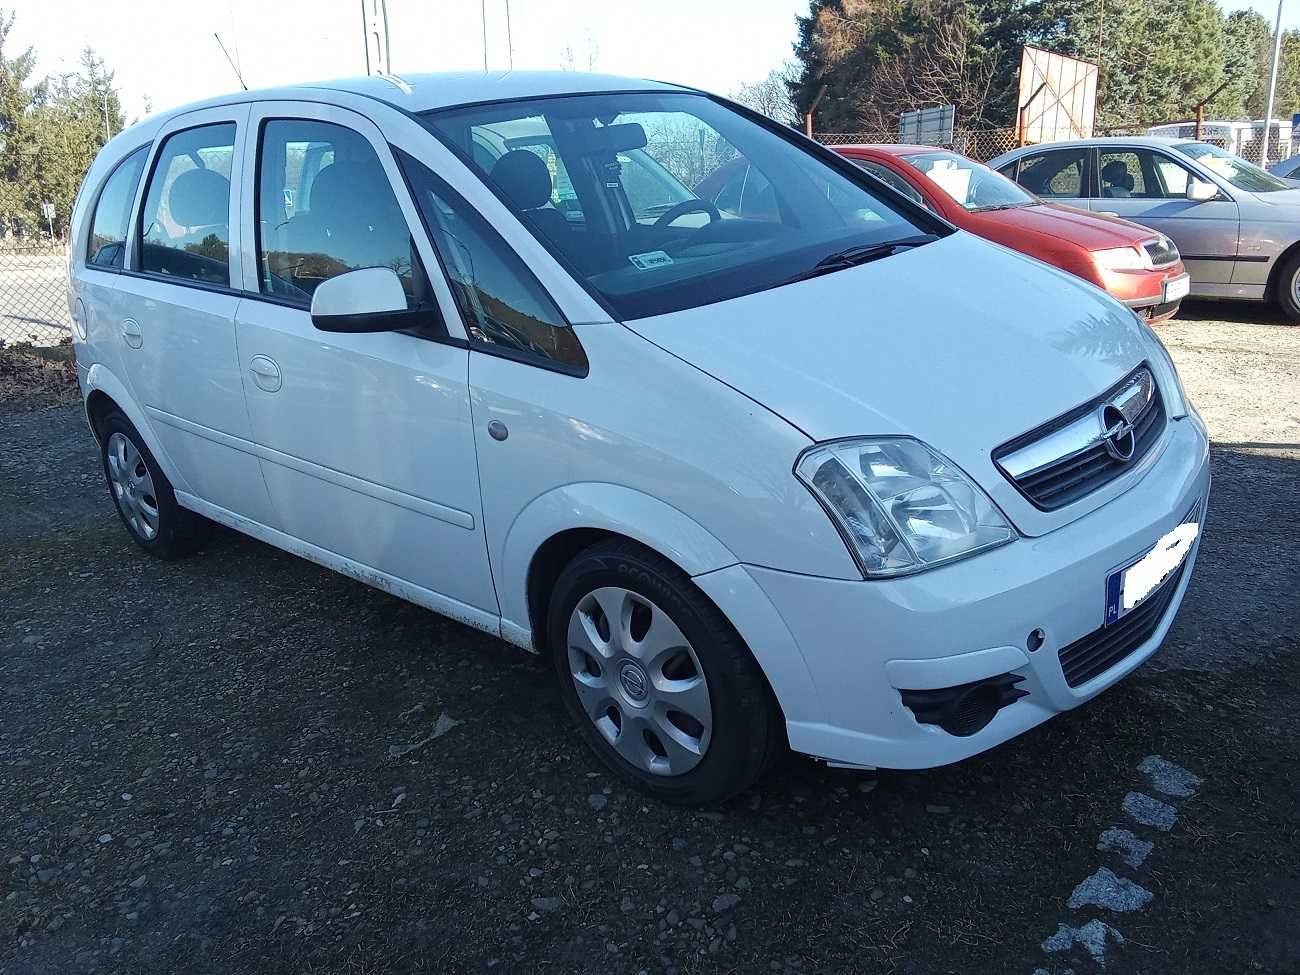 Opel Meriva 1,7 CDTI, 2008R, klima, BEZ KOROZJI, 1 WŁAŚCICIEL